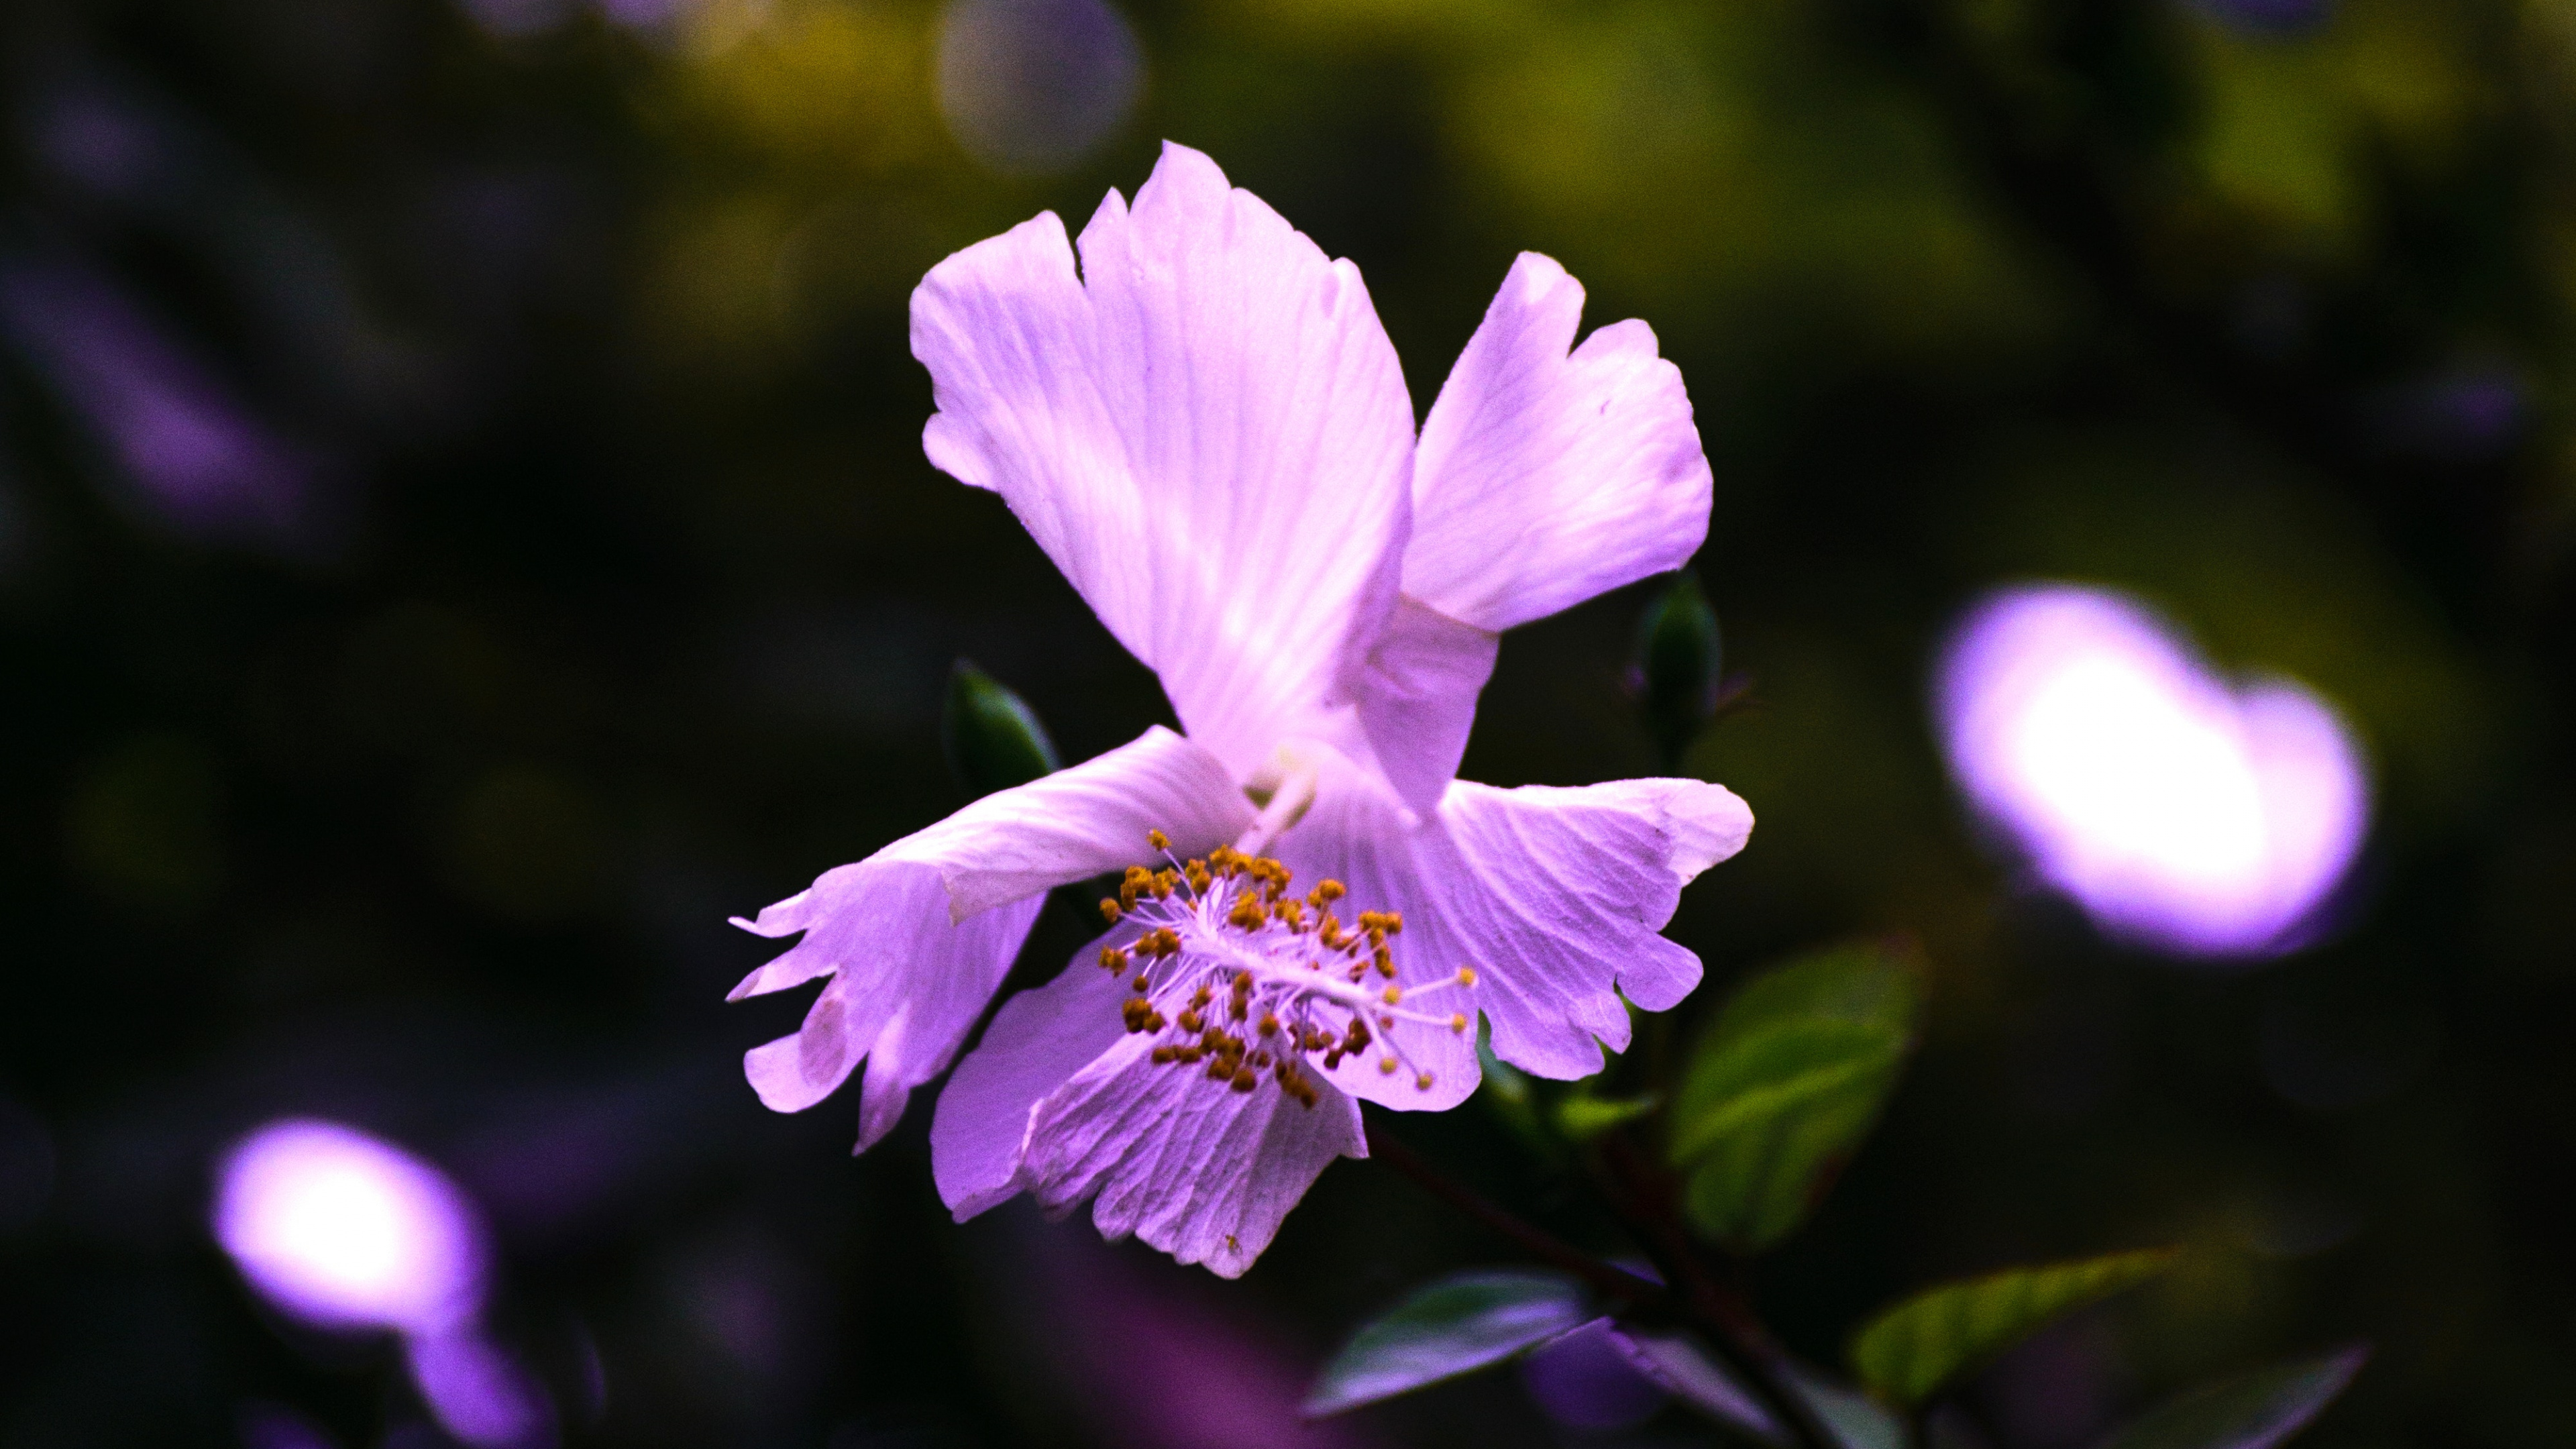 显花植物, 紫色的, 紫罗兰色, 粉红色, 弹簧 壁纸 3840x2160 允许